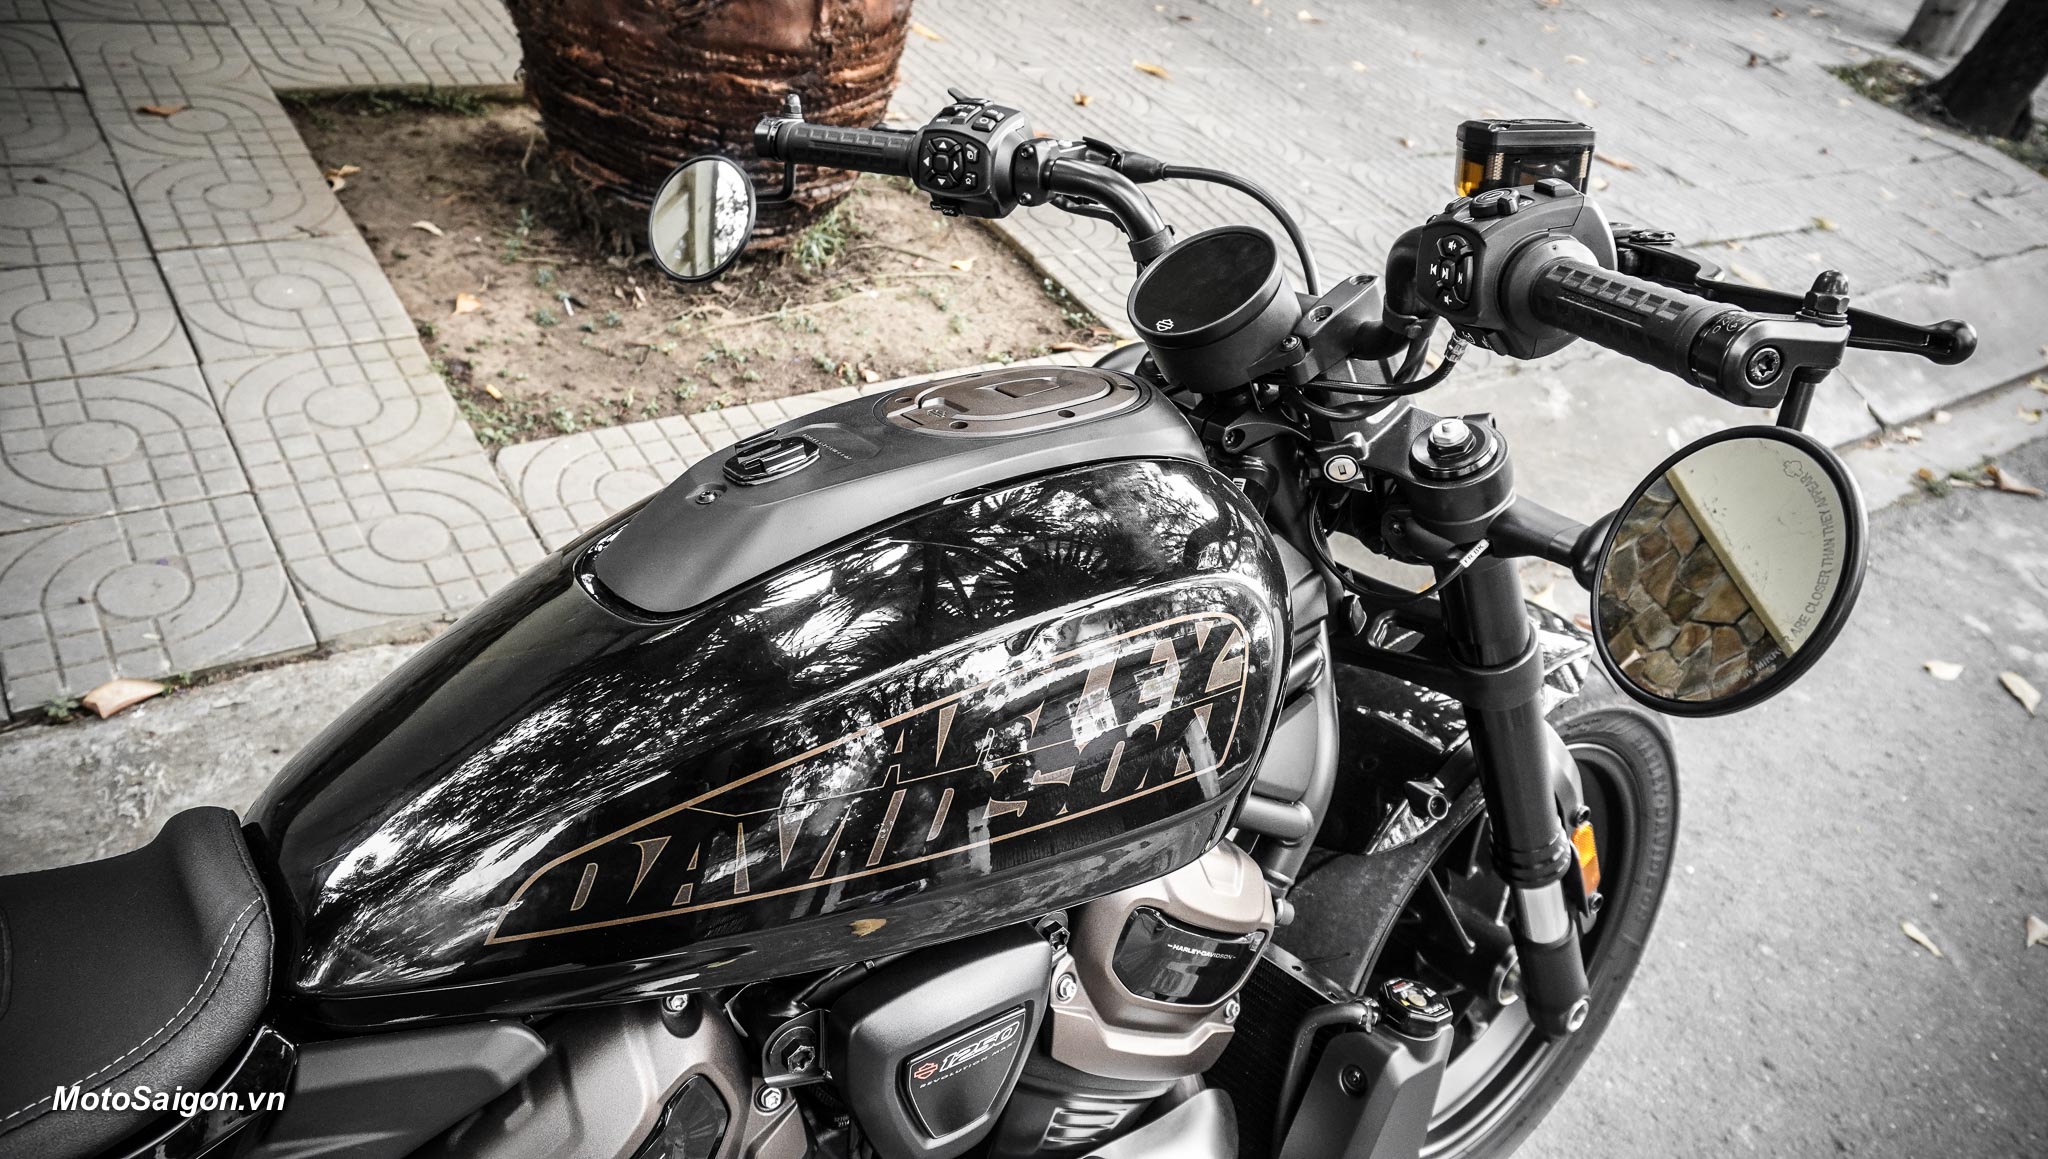 Bình xăng có dung tích 11,7 Lít kiểu hạt đậu đặc trưng của Harley-Davidson